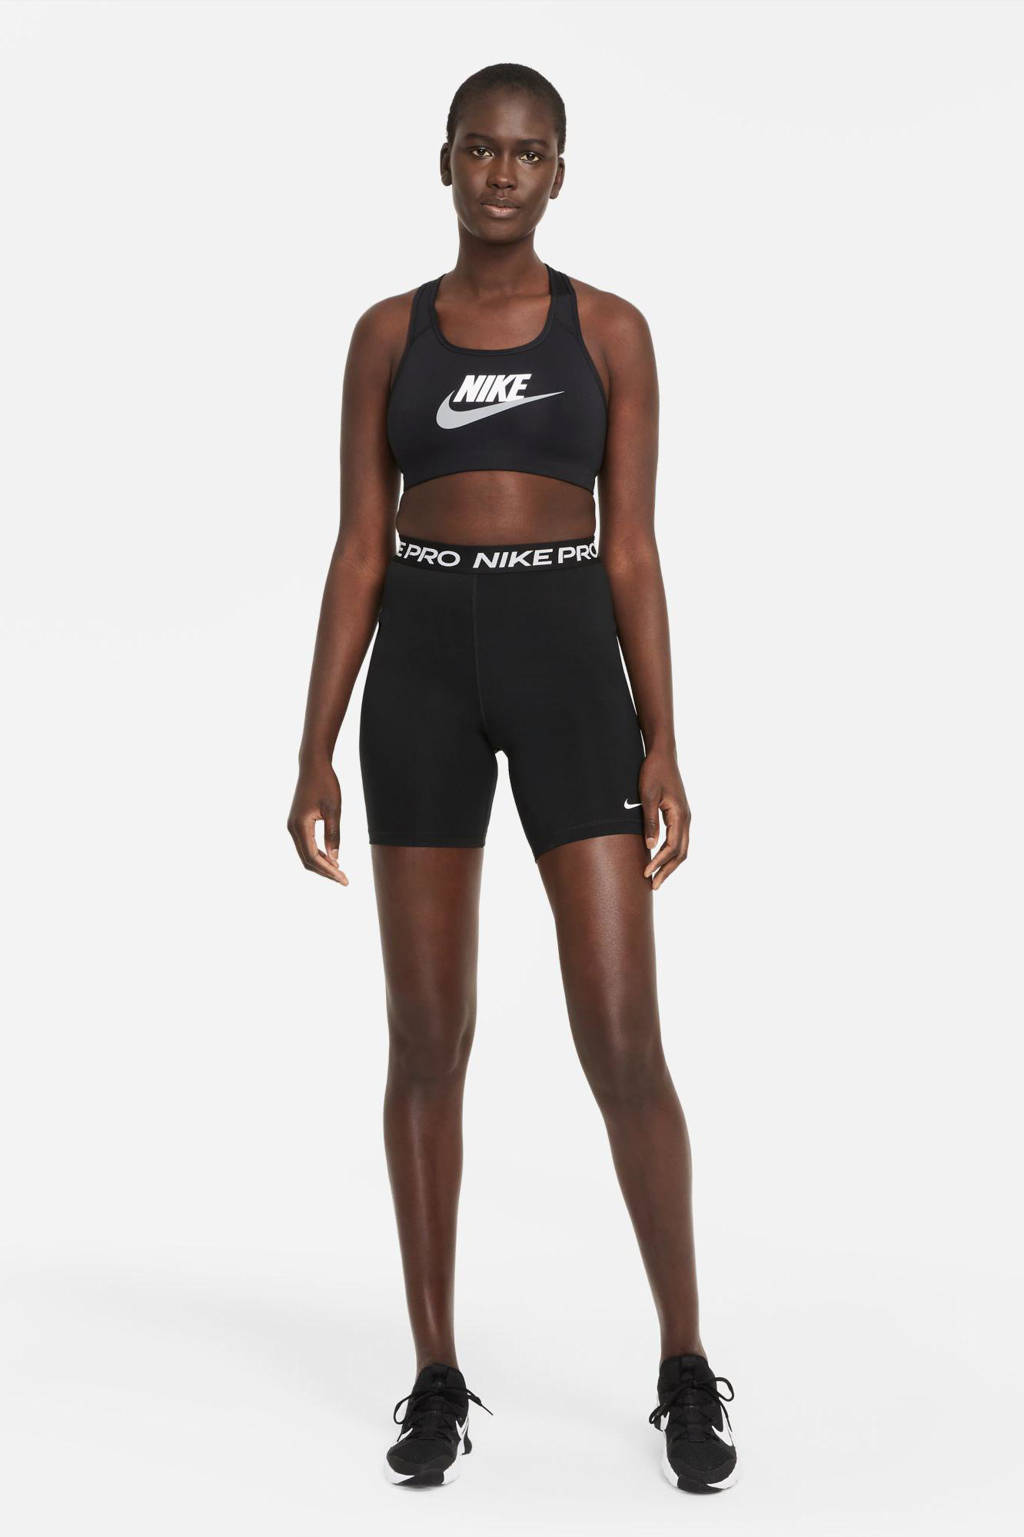 Nike level 2 sportbh zwart/wit